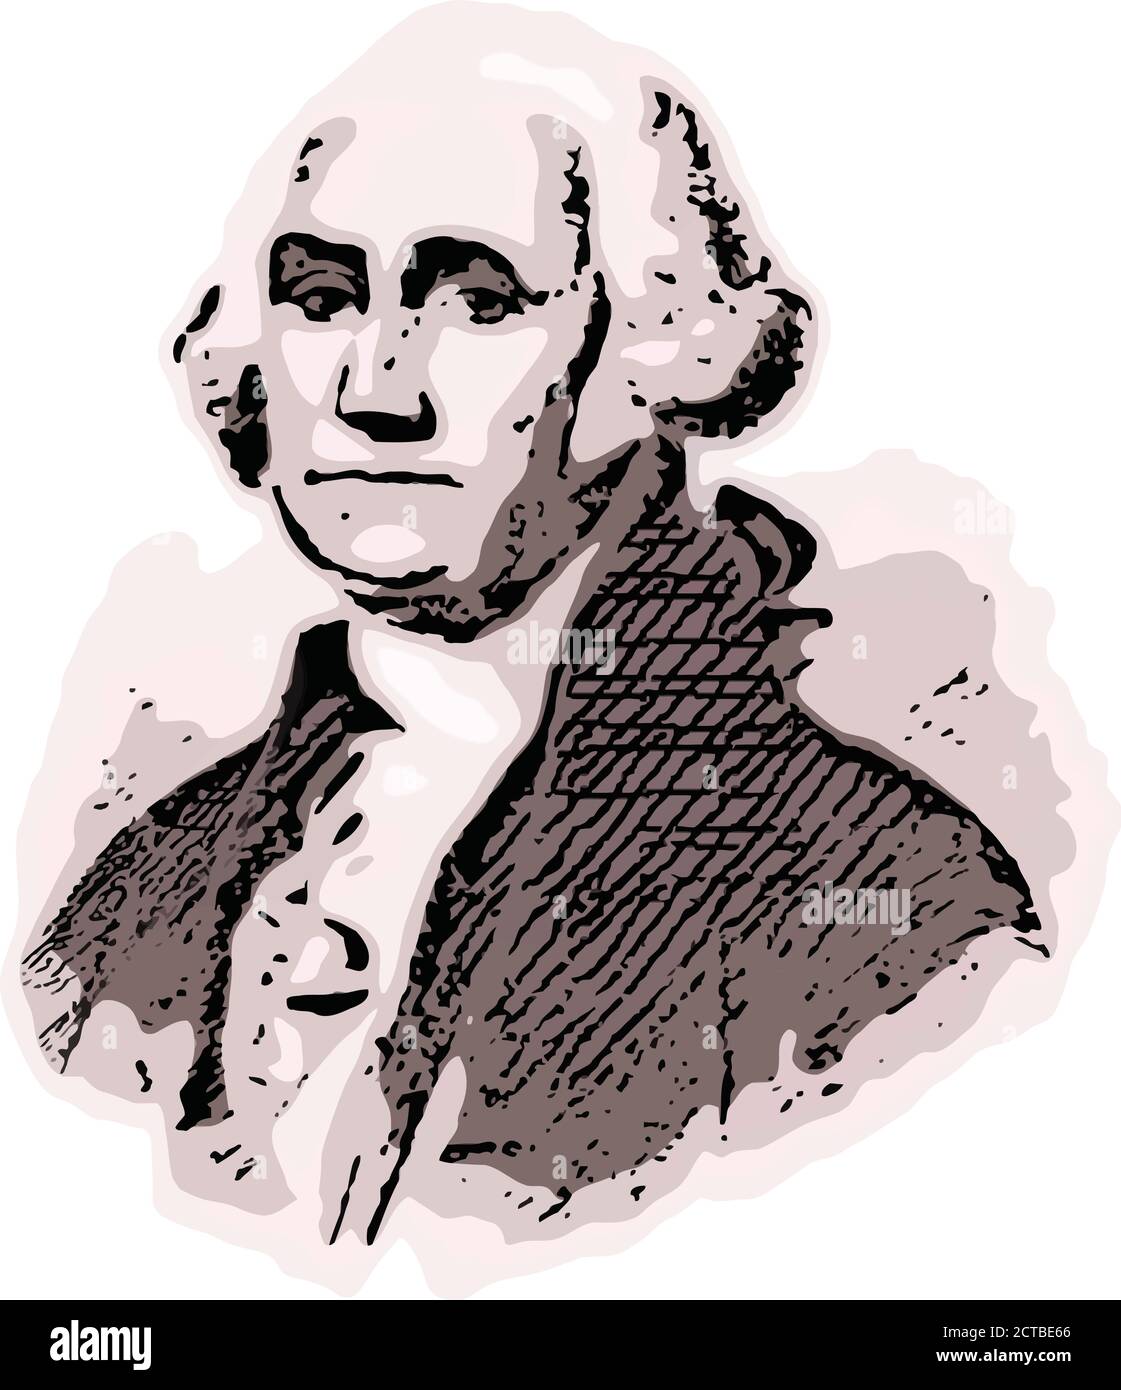 Vektor-Porträt von Präsident George Washington. George Washington (1732 – 1799) war ein amerikanischer politischer Führer, Militärgeneral, Staatsmann und Fou Stock Vektor